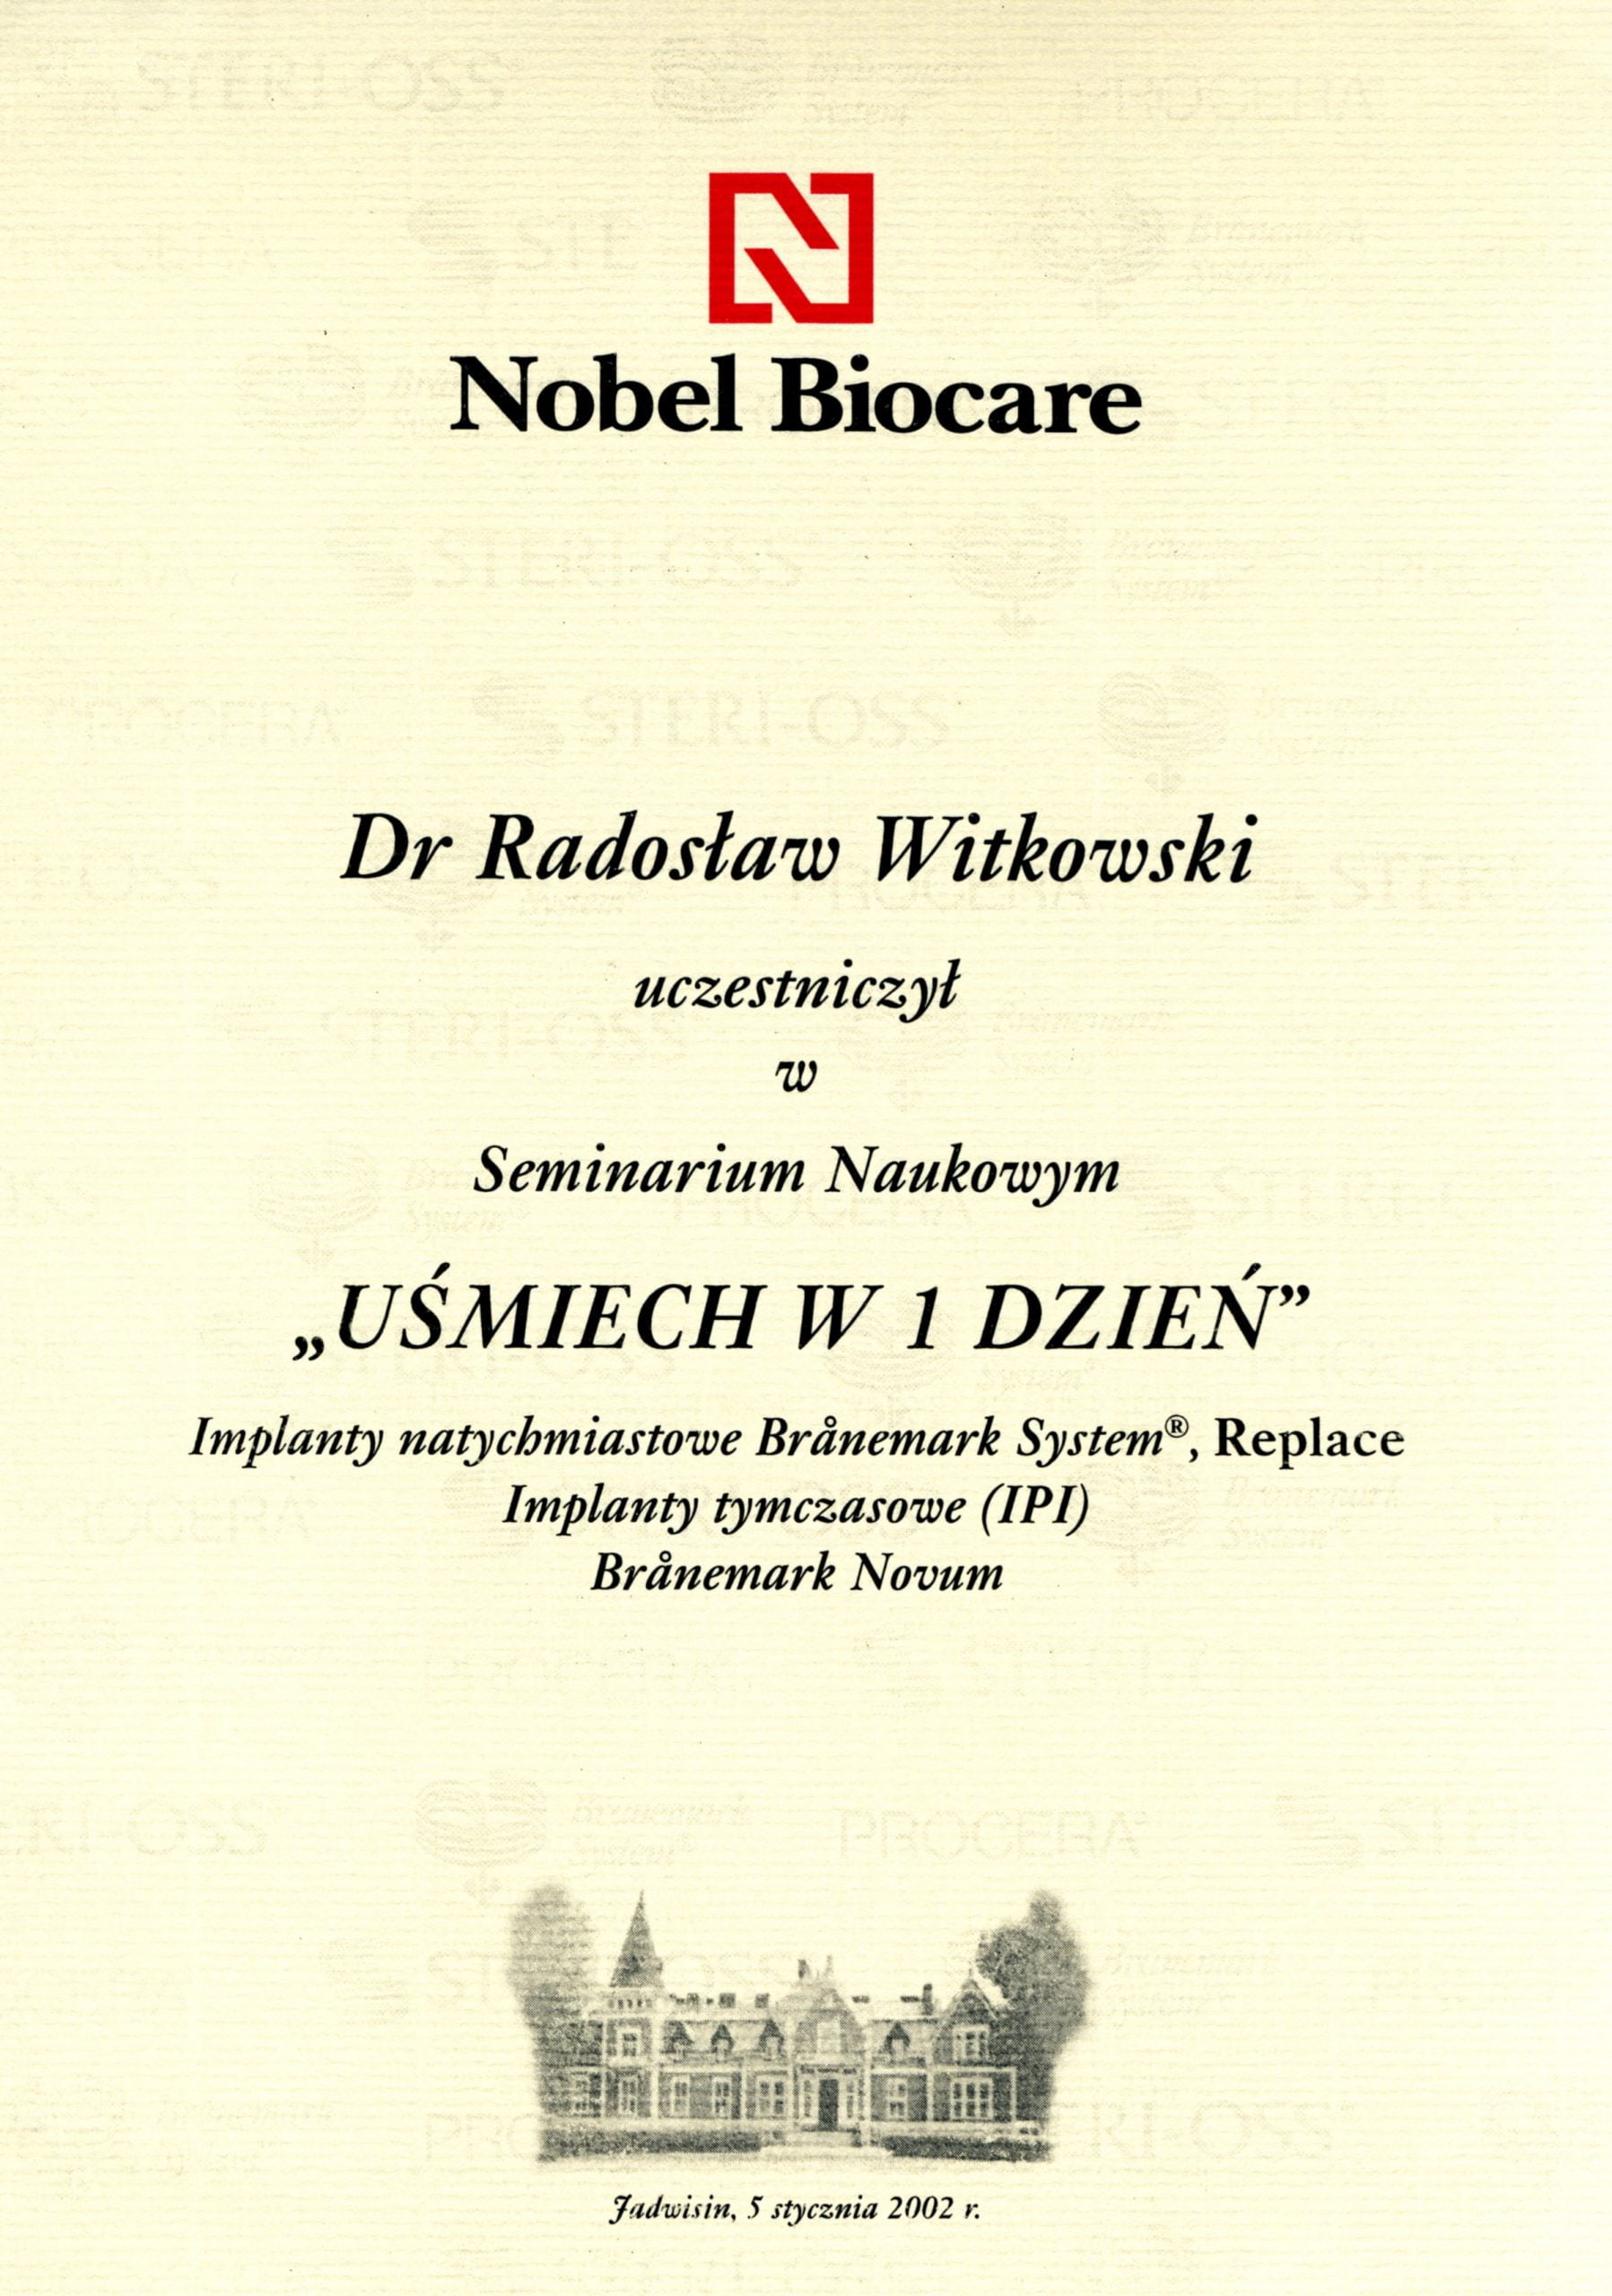 Radosław Witkowski certyfikat 28